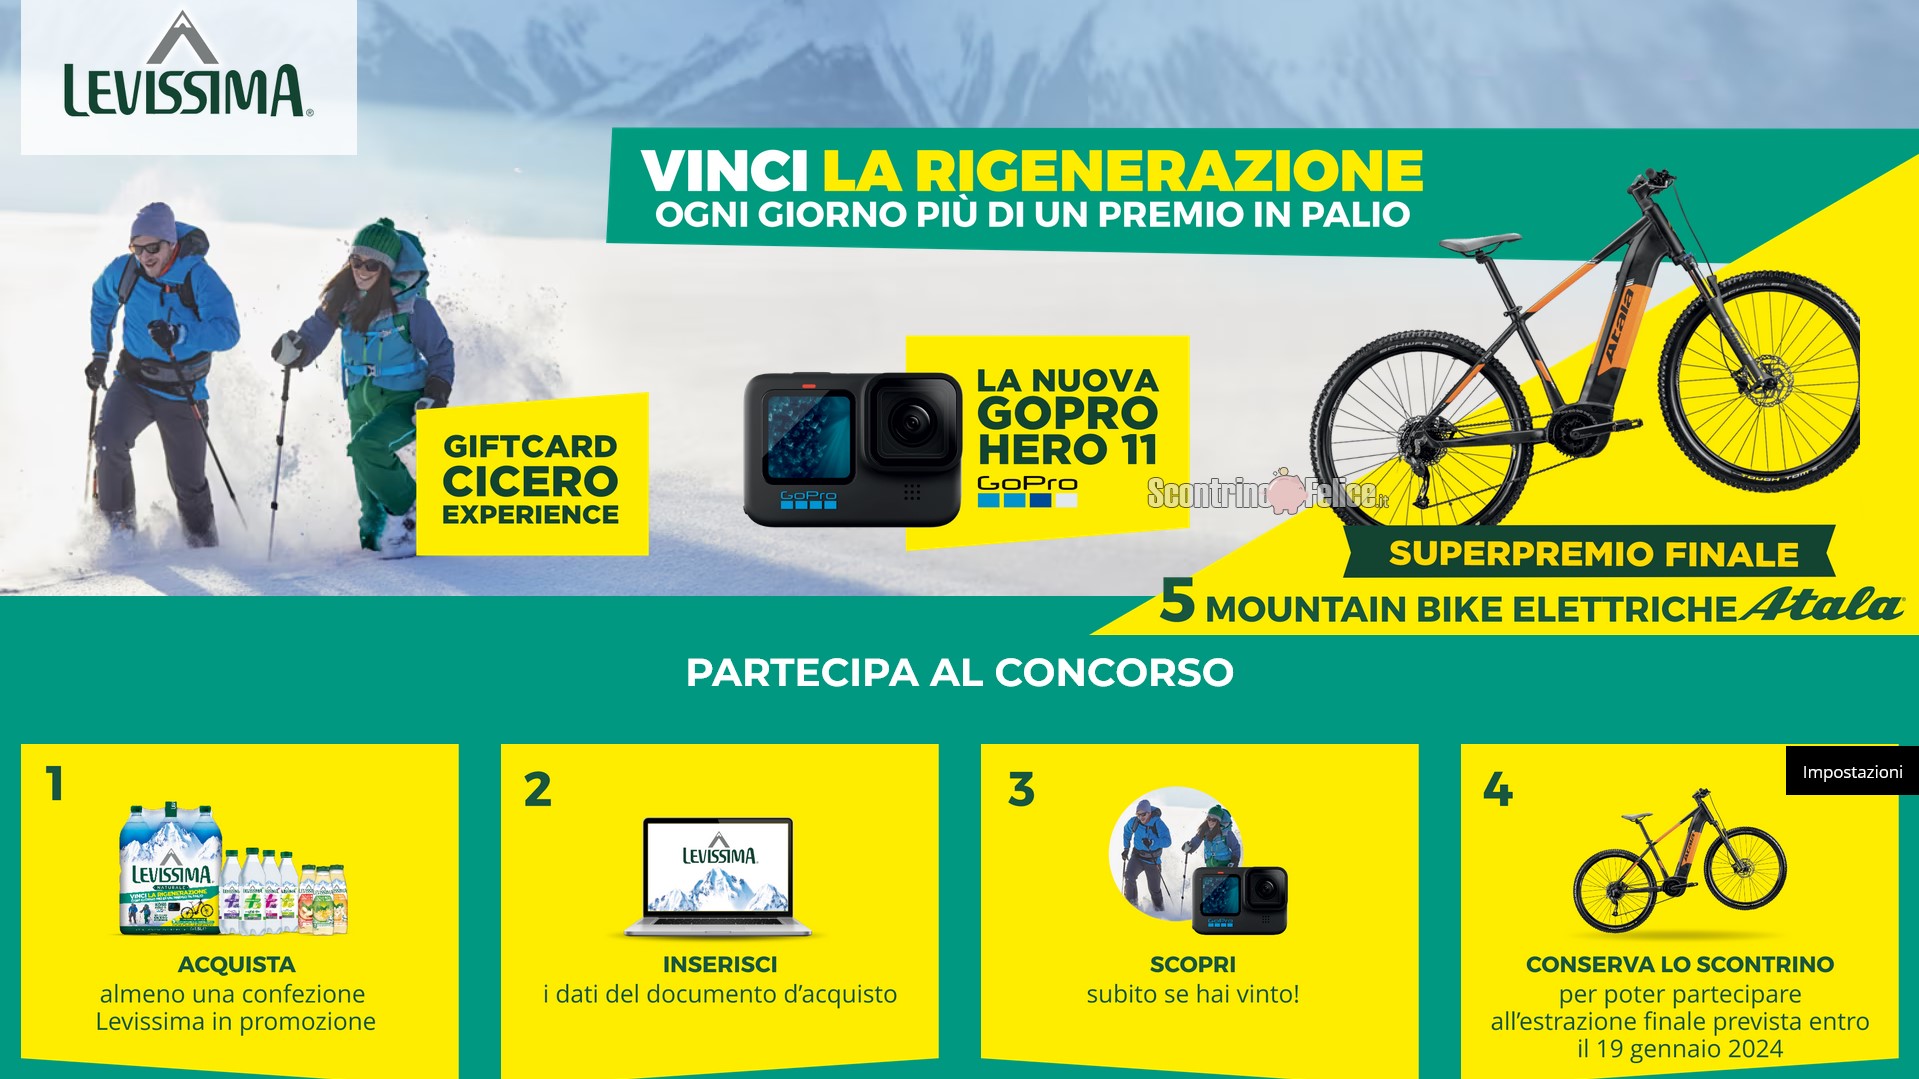 Concorso Levissima “Vinci La Rigenerazione” 2023: vinci GoPro, buoni Cicero Experience e eBike Atala